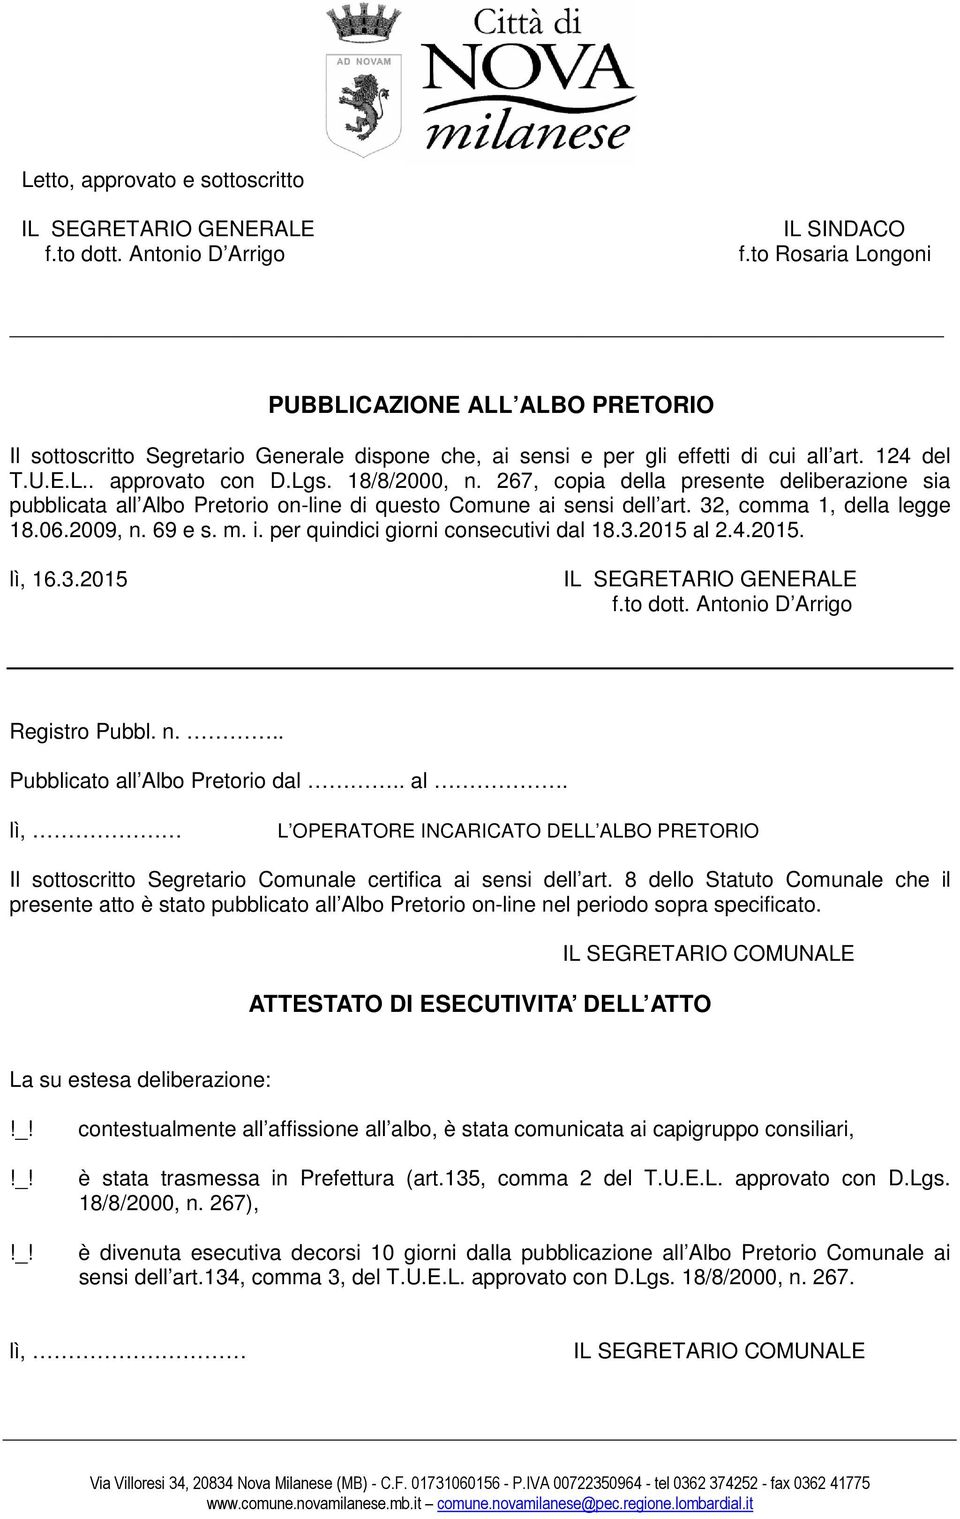 267, copia della presente deliberazione sia pubblicata all Albo Pretorio on-line di questo ai sensi dell art. 32, comma 1, della legge 18.06.2009, n. 69 e s. m. i.